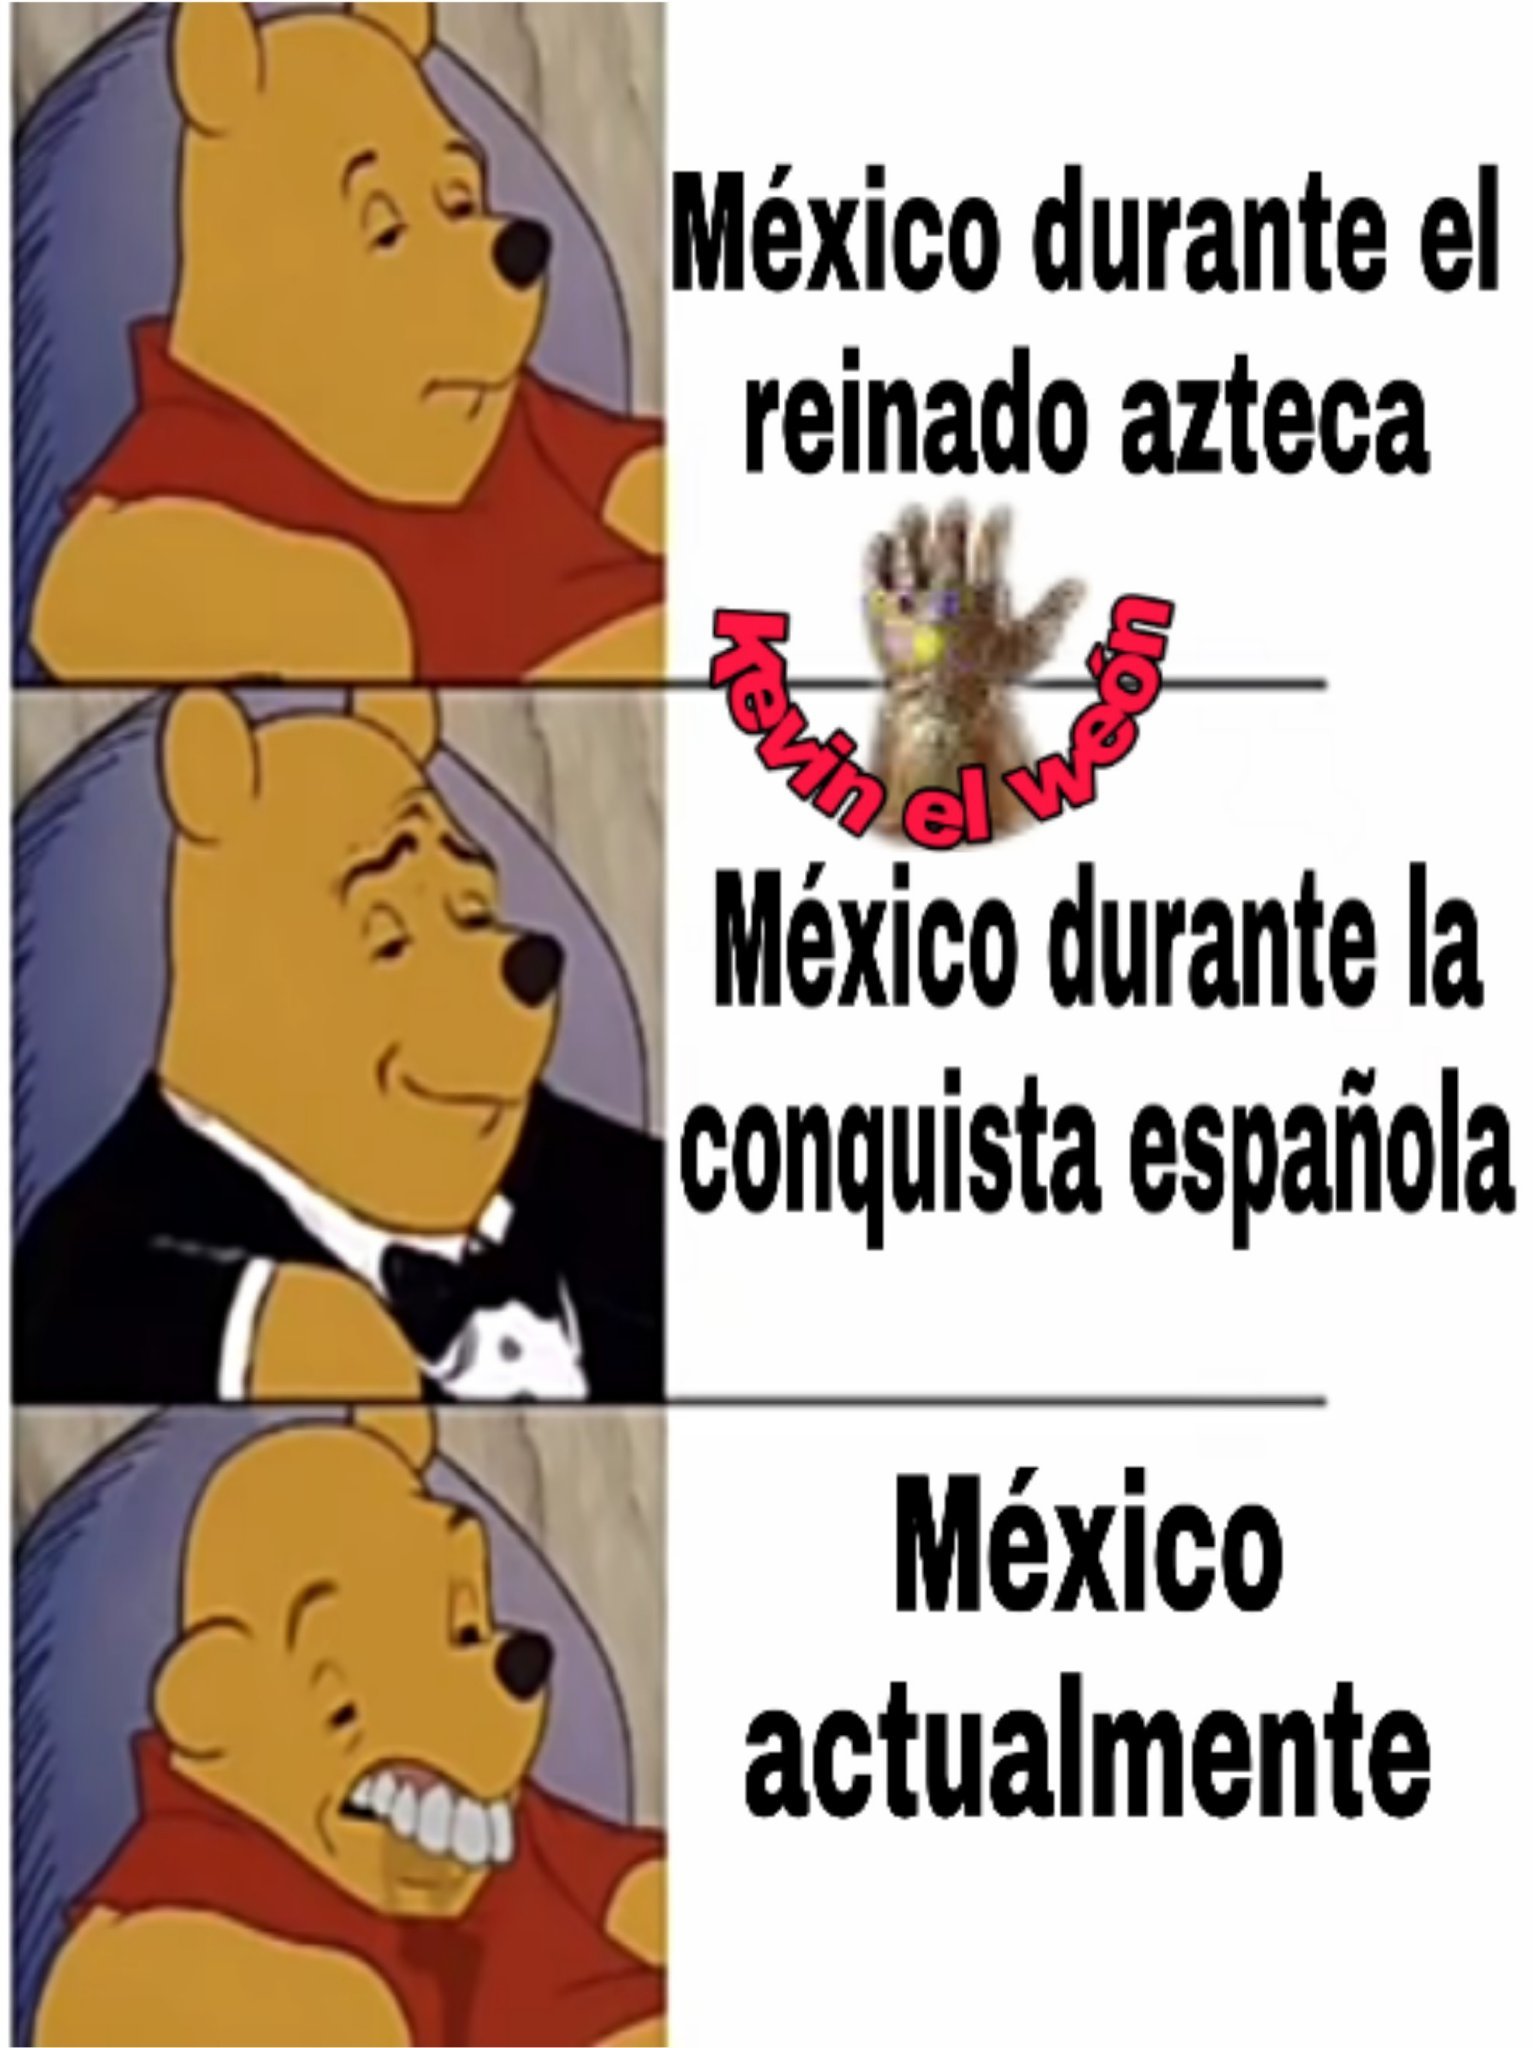 Me refiero a México en cuanto a política - meme